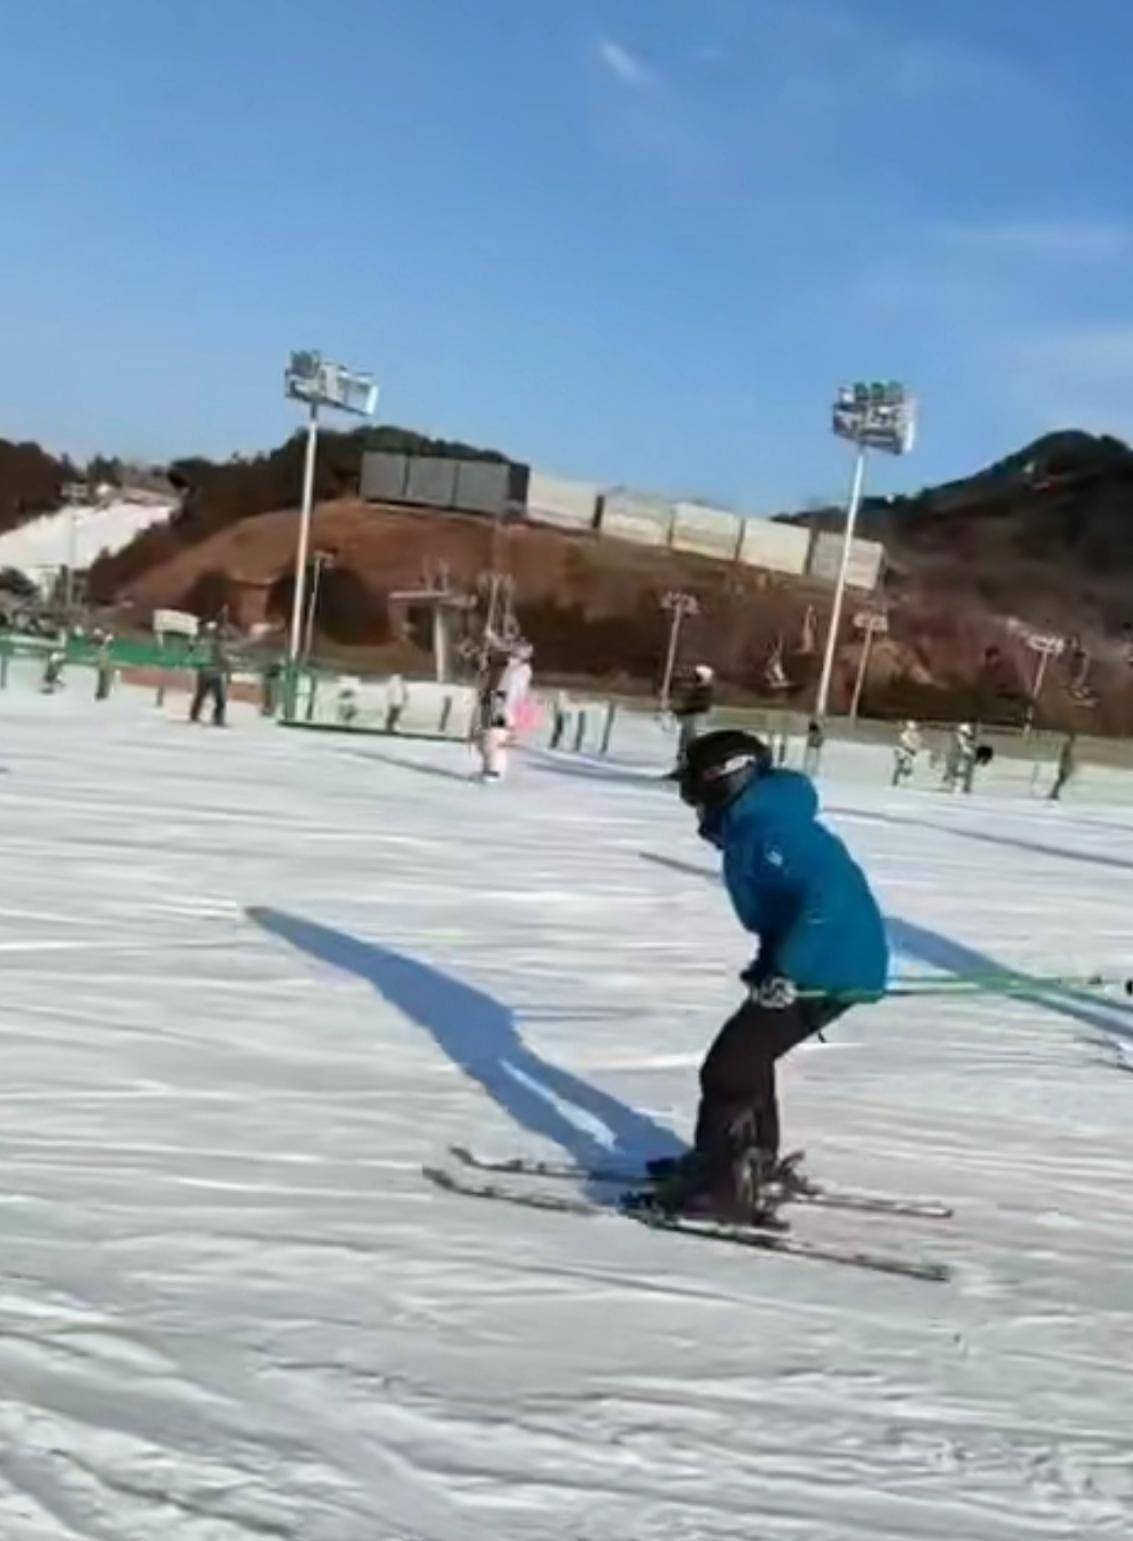 林永健晒儿子滑雪，大竣身高快赶上成人，低调学习屡获国际大奖 - 1